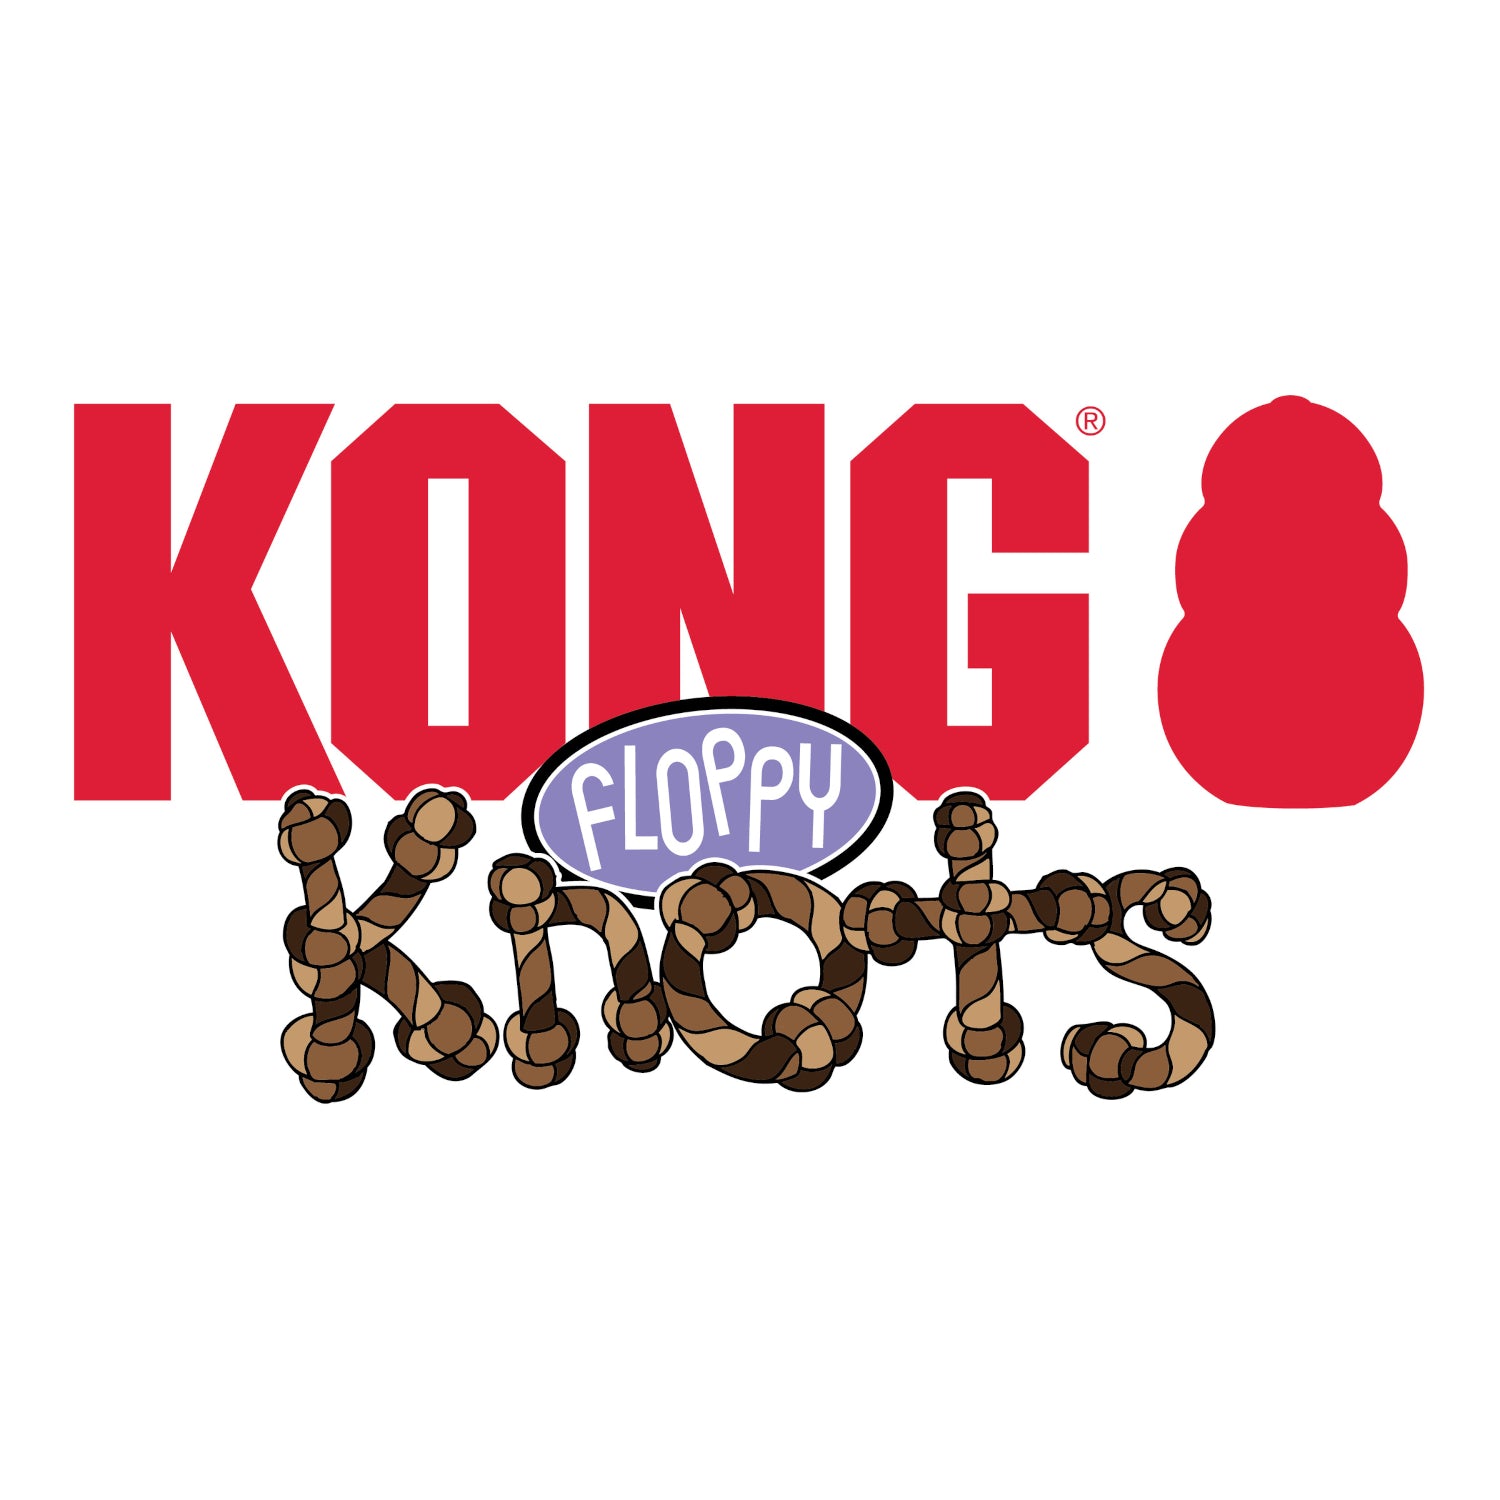 KONG Floppy Knots Elephant